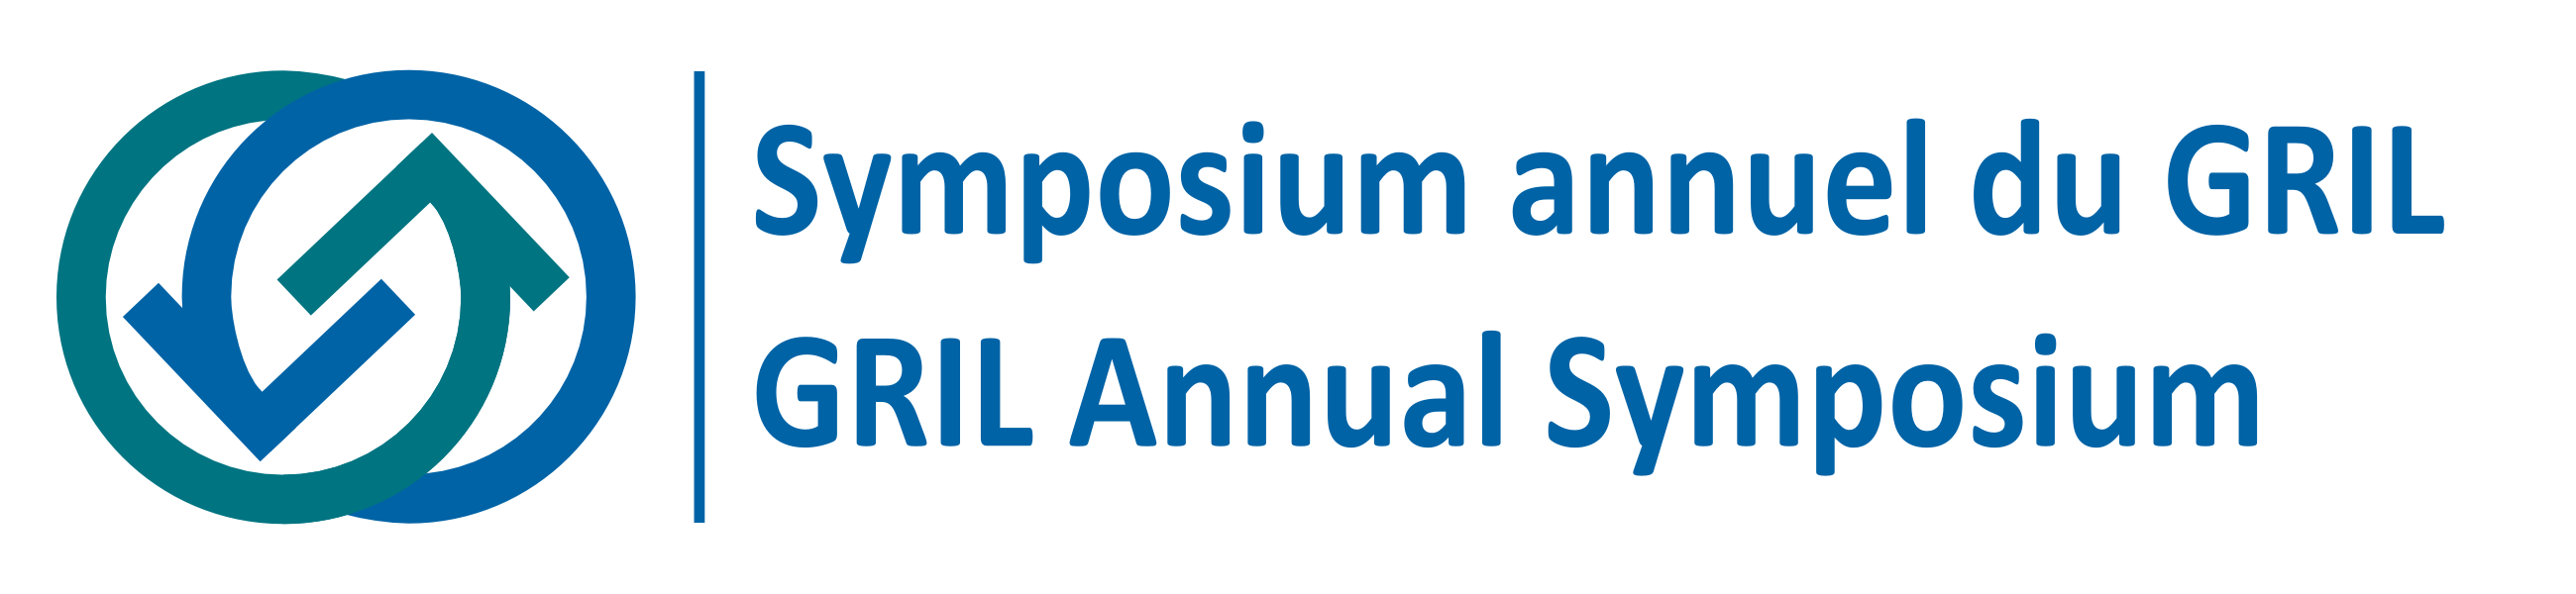 Logo_Symposium_2019_FR